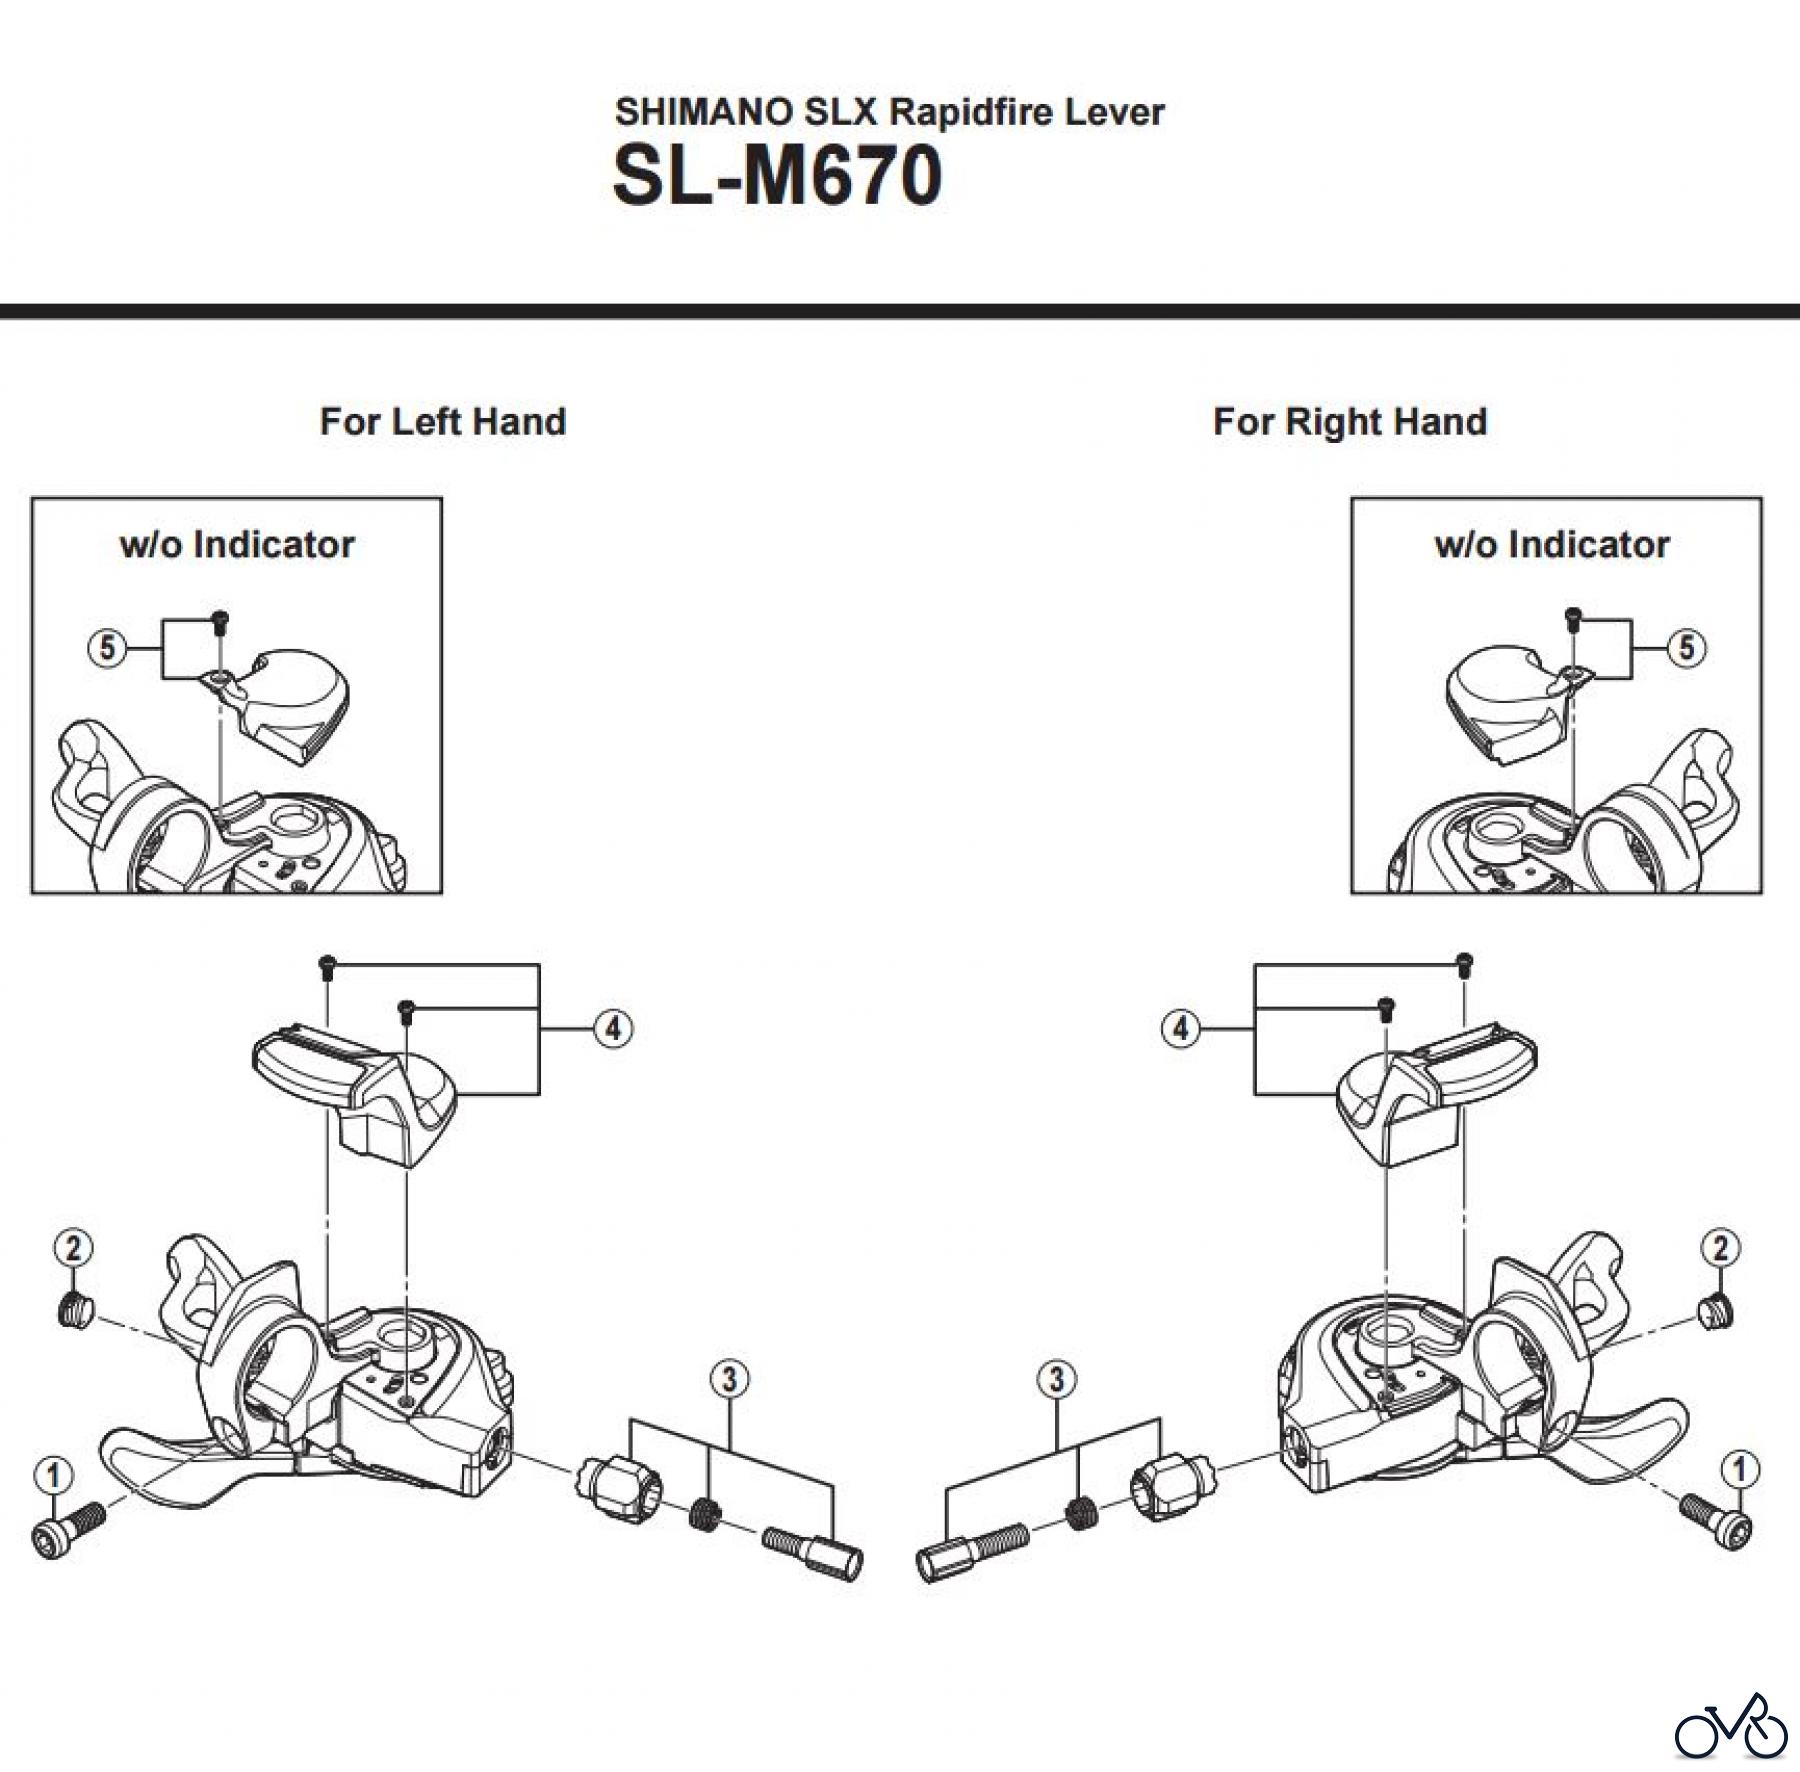  Shimano SL Shift Lever - Schalthebel SL-M670 SHIMANO SLX Rapidfire Lever